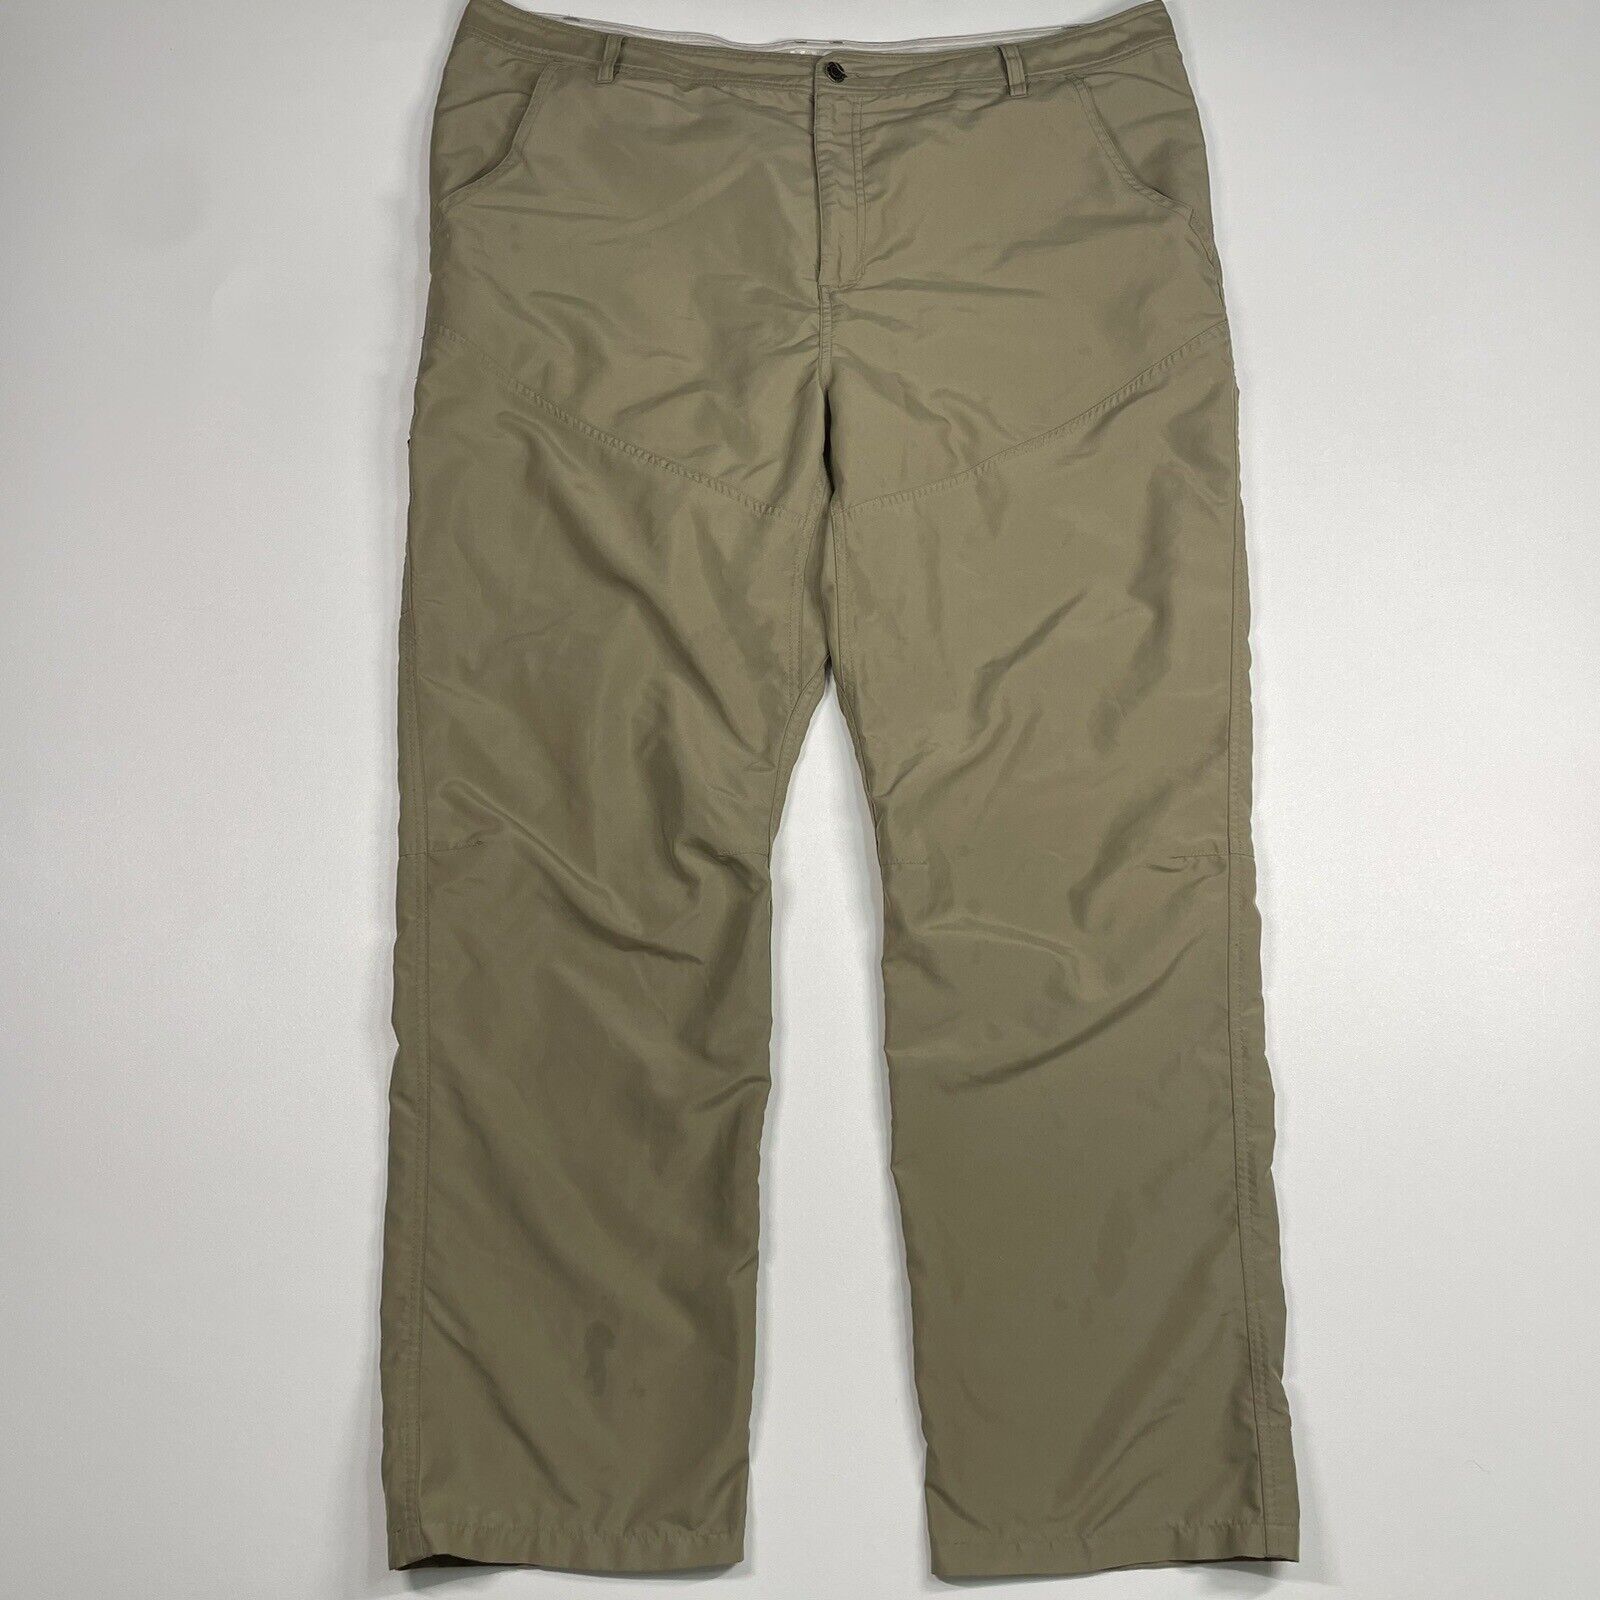 Magellan Pants Men’s 42x31 Tan Outdoor Performance Hiking Fishing